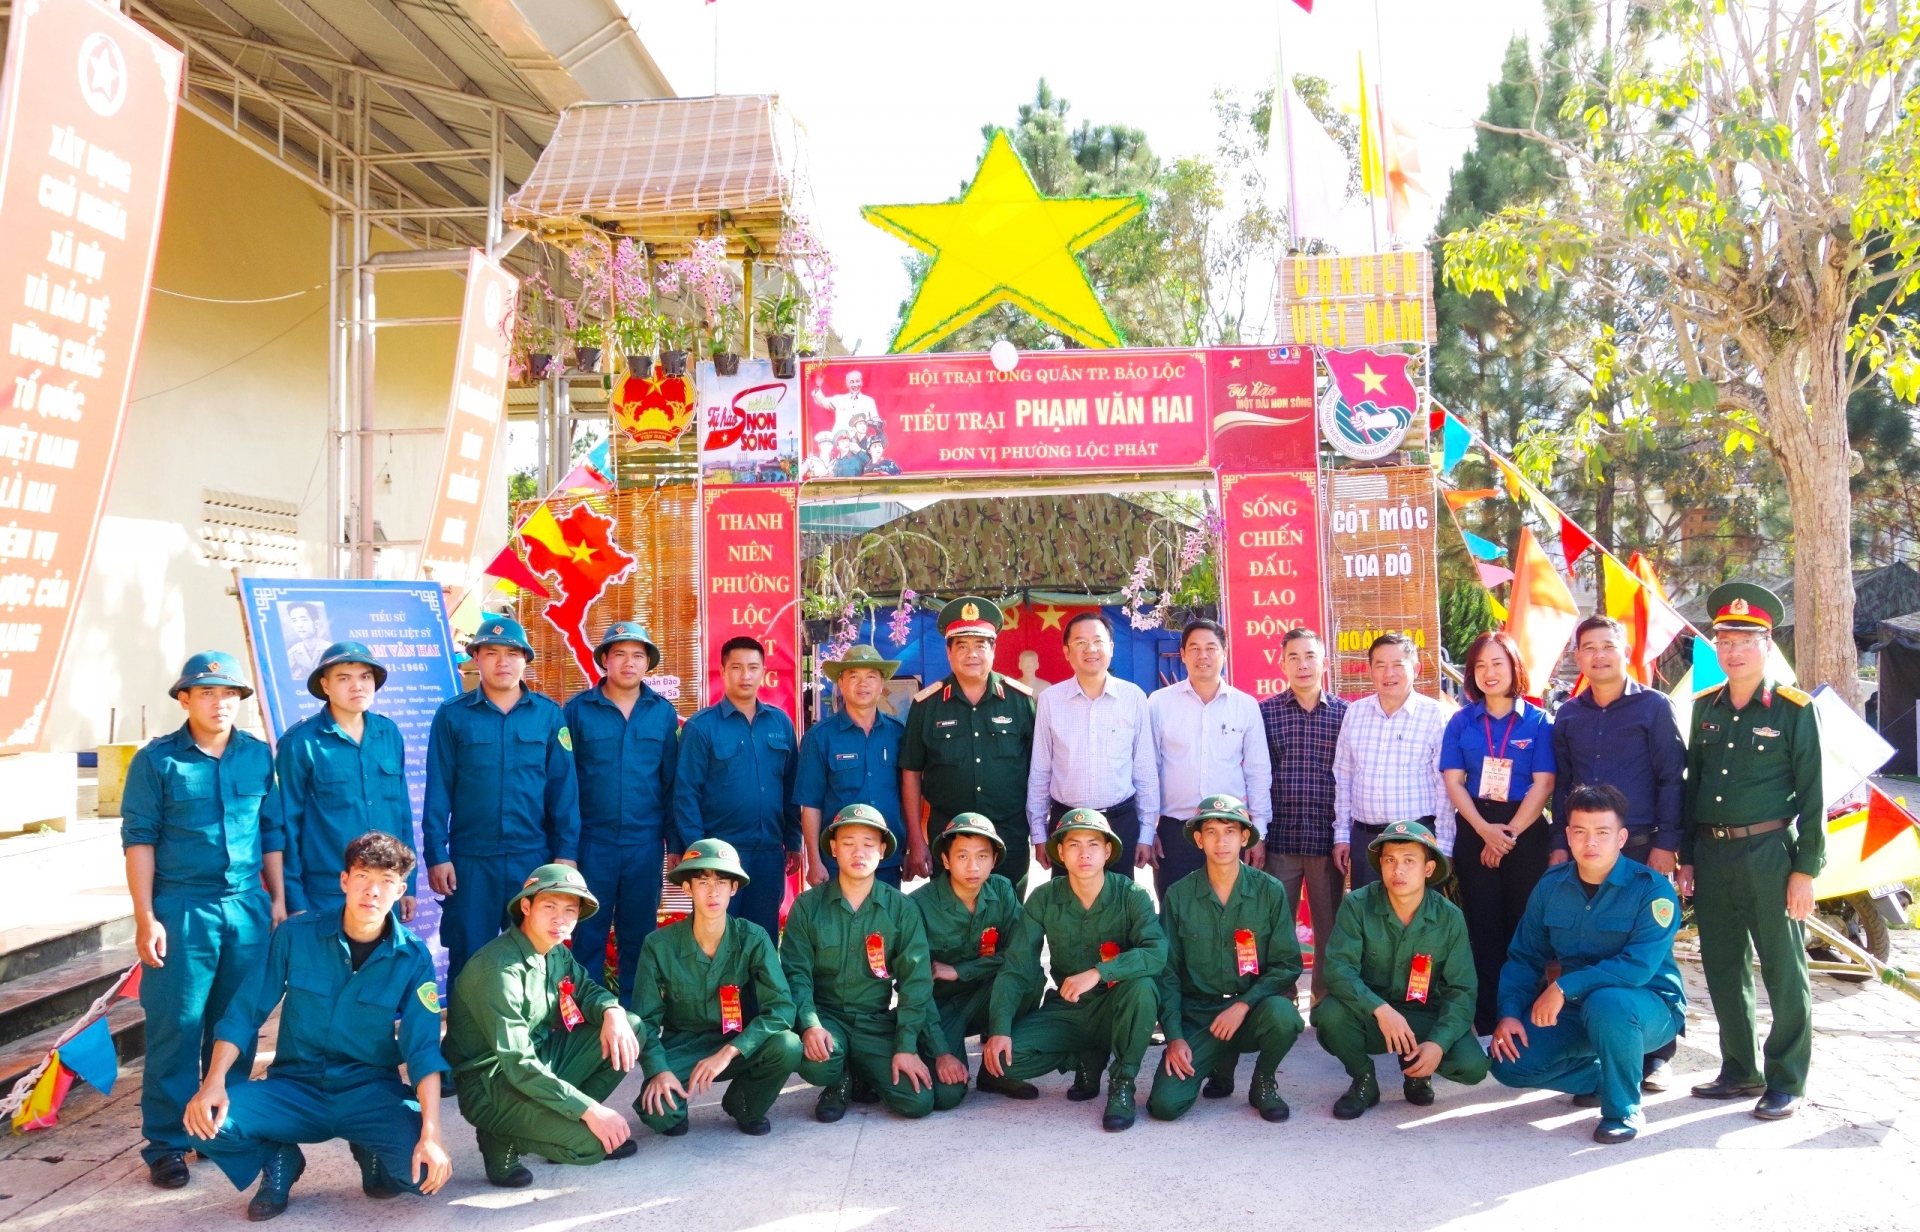 Thiếu tướng Nguyễn Văn Hoàng - Phó Tham mưu trưởng Bộ tư lệnh Quân khu 7 cùng các đồng chí lãnh đạo TP Bảo Lộc kiểm tra Hội trại tòng quân và chụp hình lưu niệm cùng các tân binh